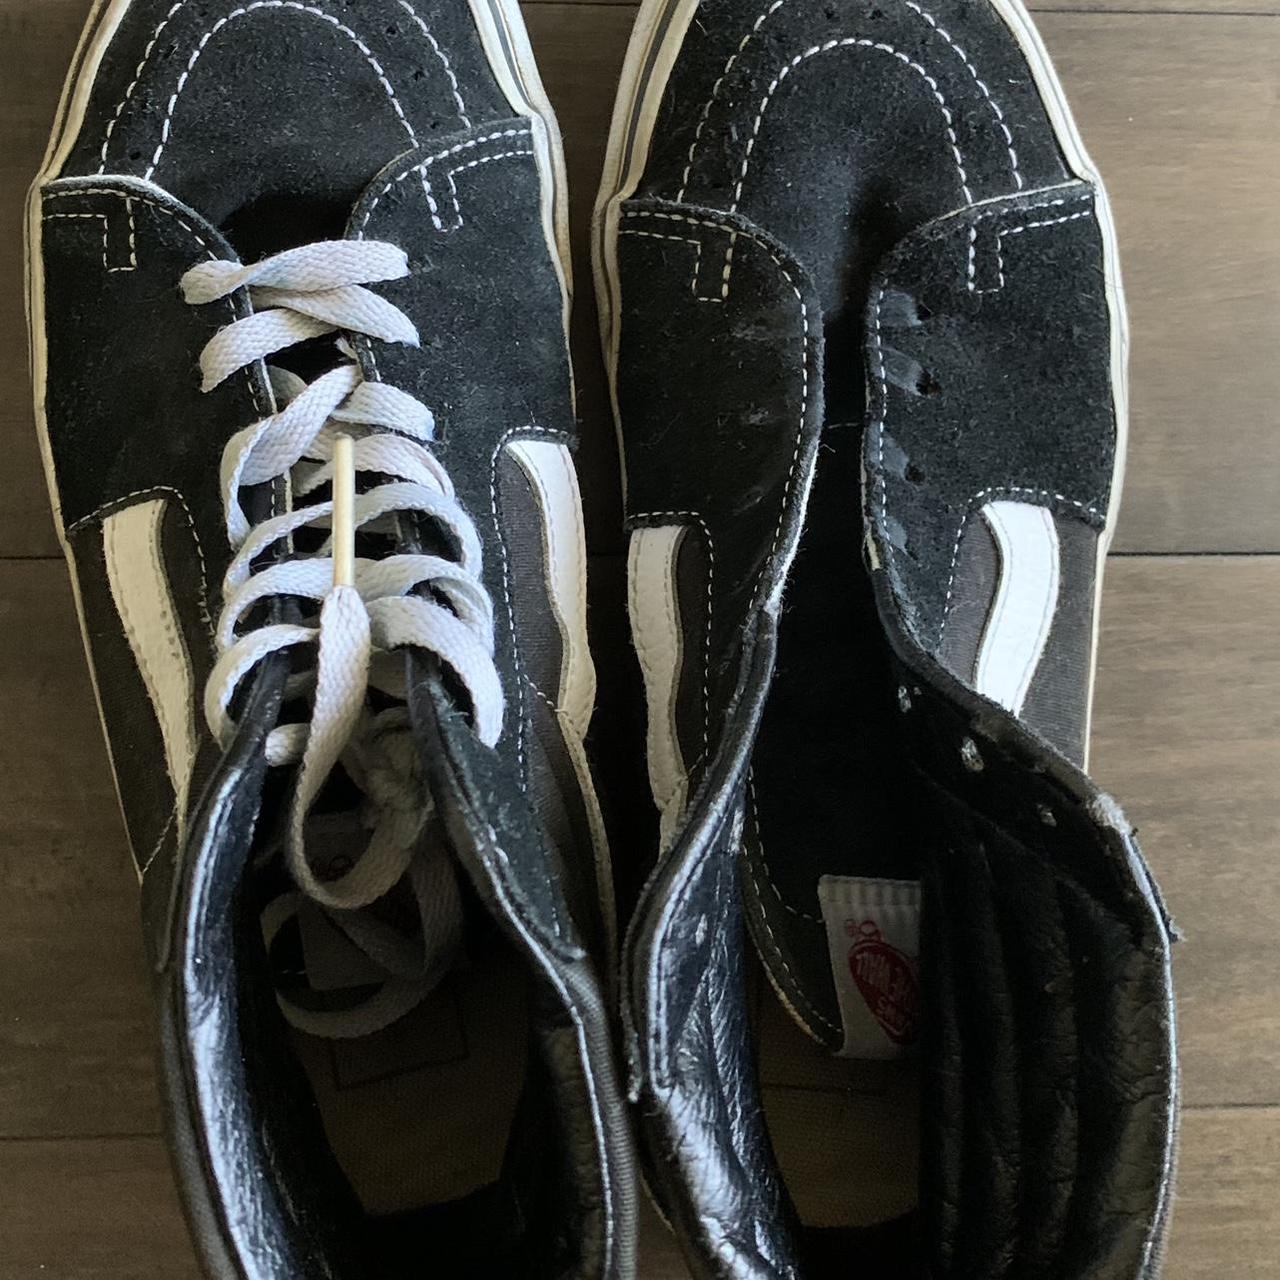 Vans black/white. Missing a lace. Shoe size 6.5 - Depop